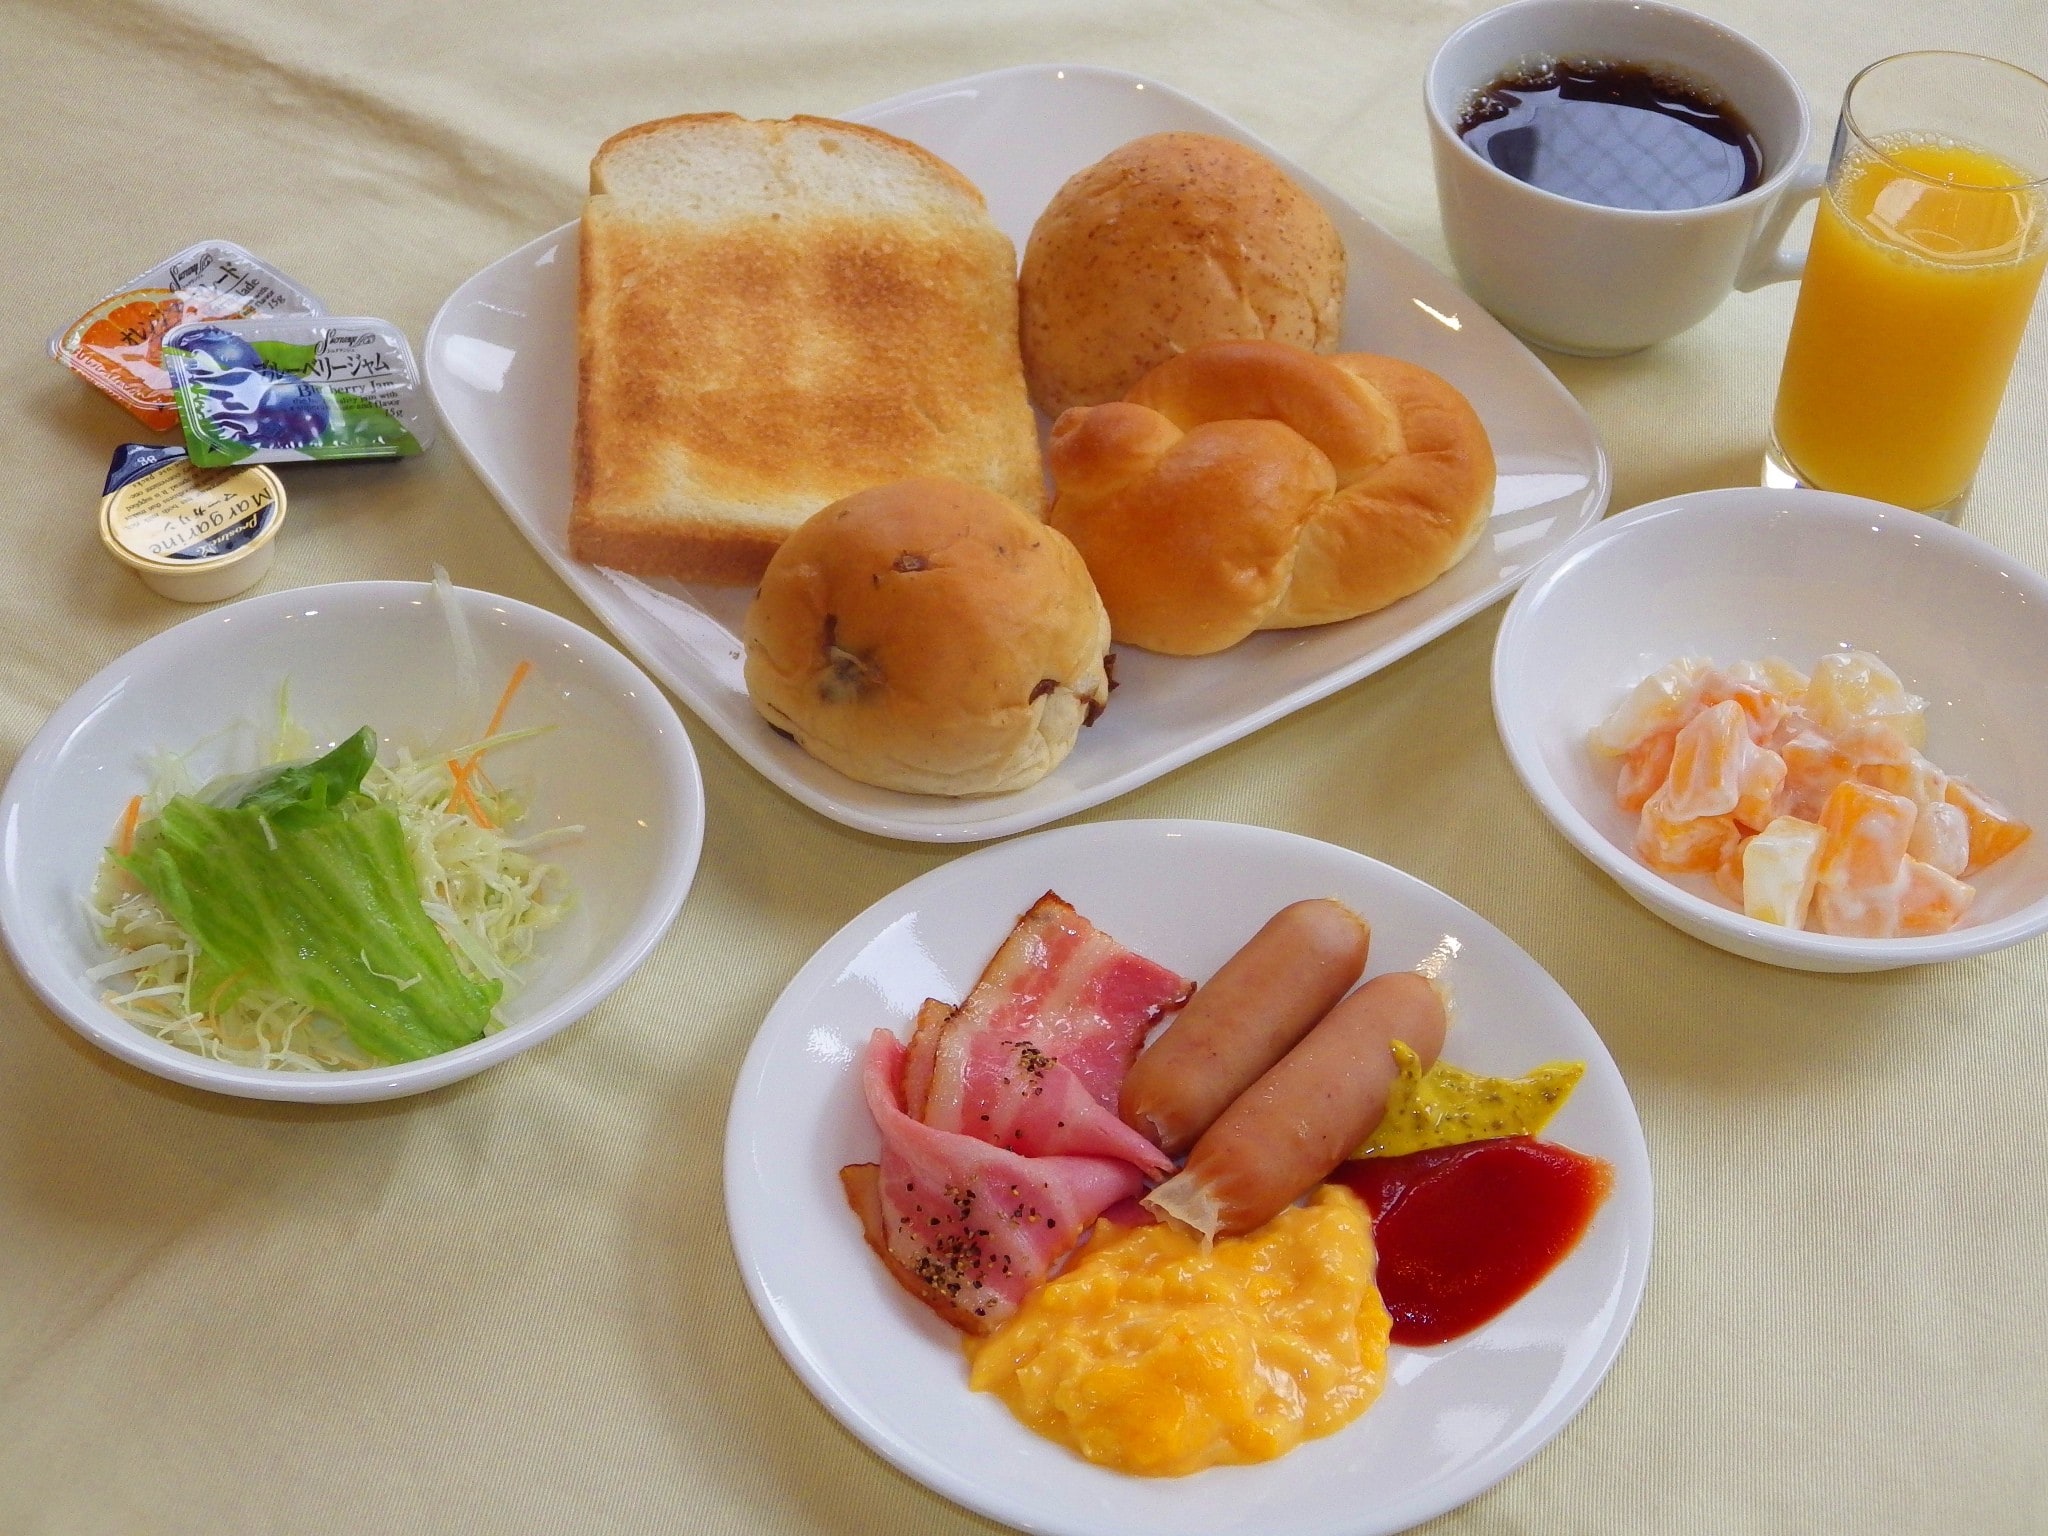 It is an image of breakfast buffet